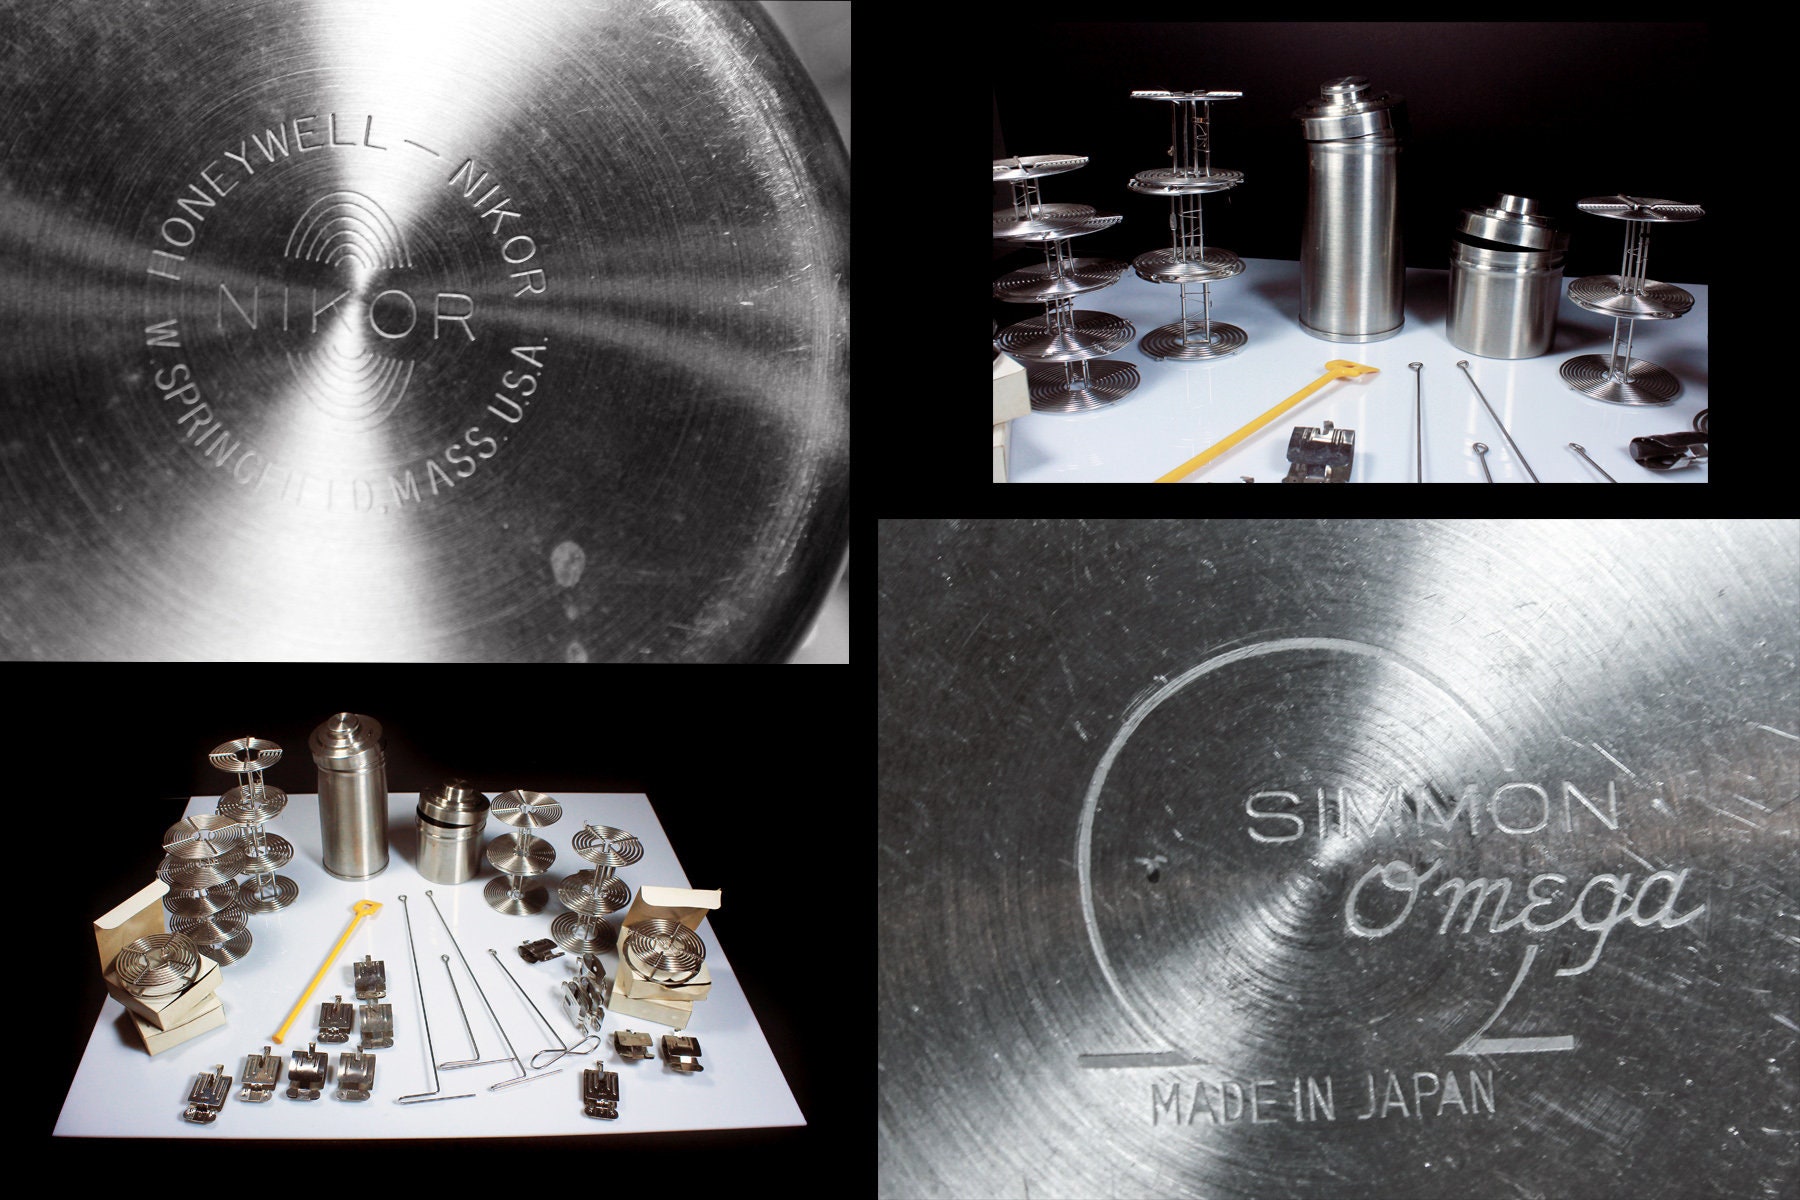 Film Developing Equipment, Stainless Steel, Simon Omega, Honeywell